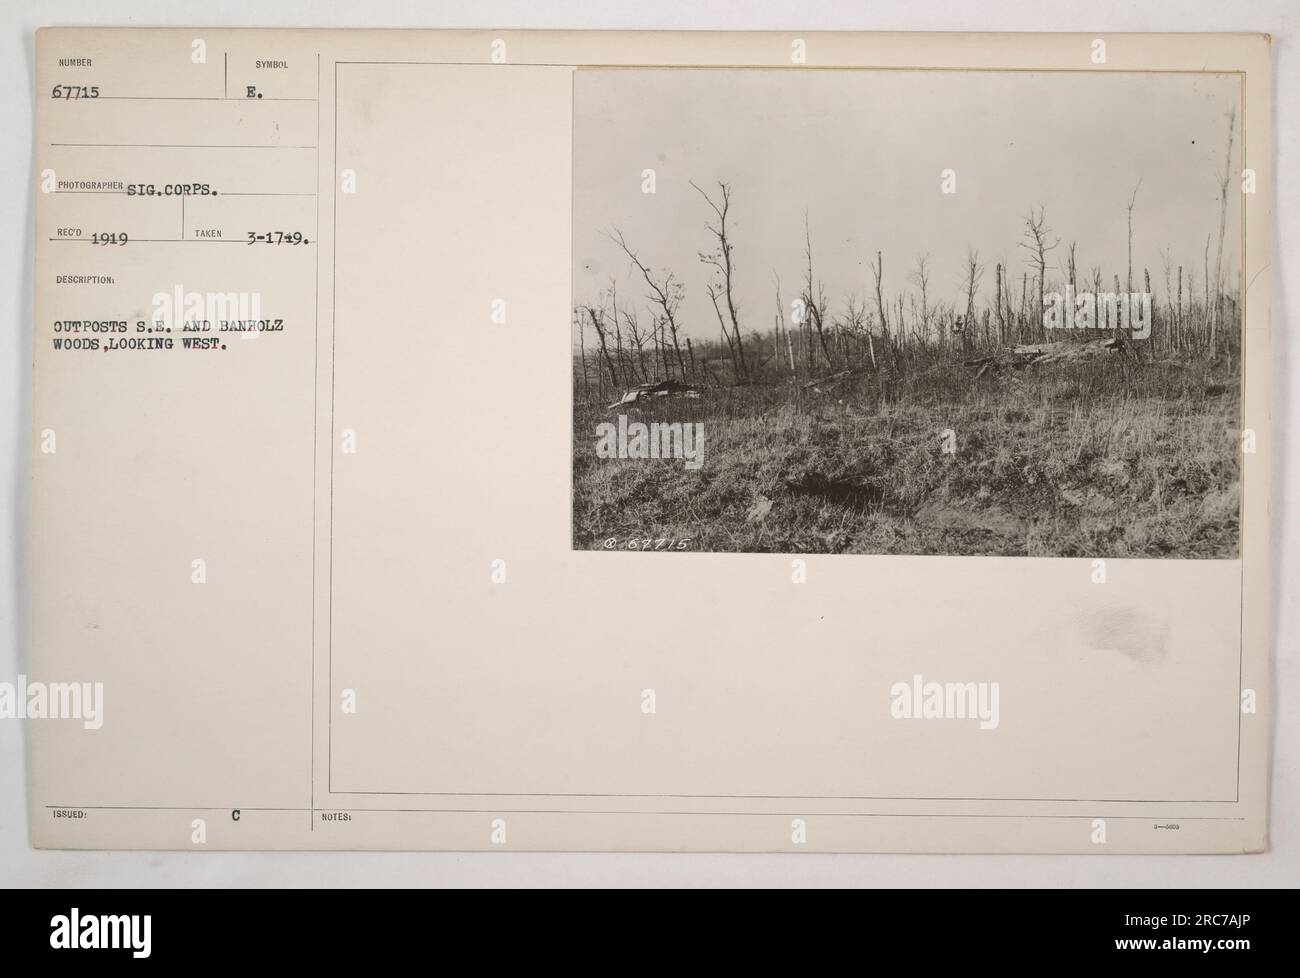 1749 - questa fotografia mostra una vista degli avamposti S.E. e Banholz Woods, guardando ad ovest. La foto è stata scattata nel 1919 dalla squadra di ricognizione Signal Corps, identificata dal numero 67715. L'immagine è stata catturata come parte della loro documentazione delle attività militari americane durante la prima guerra mondiale Foto Stock